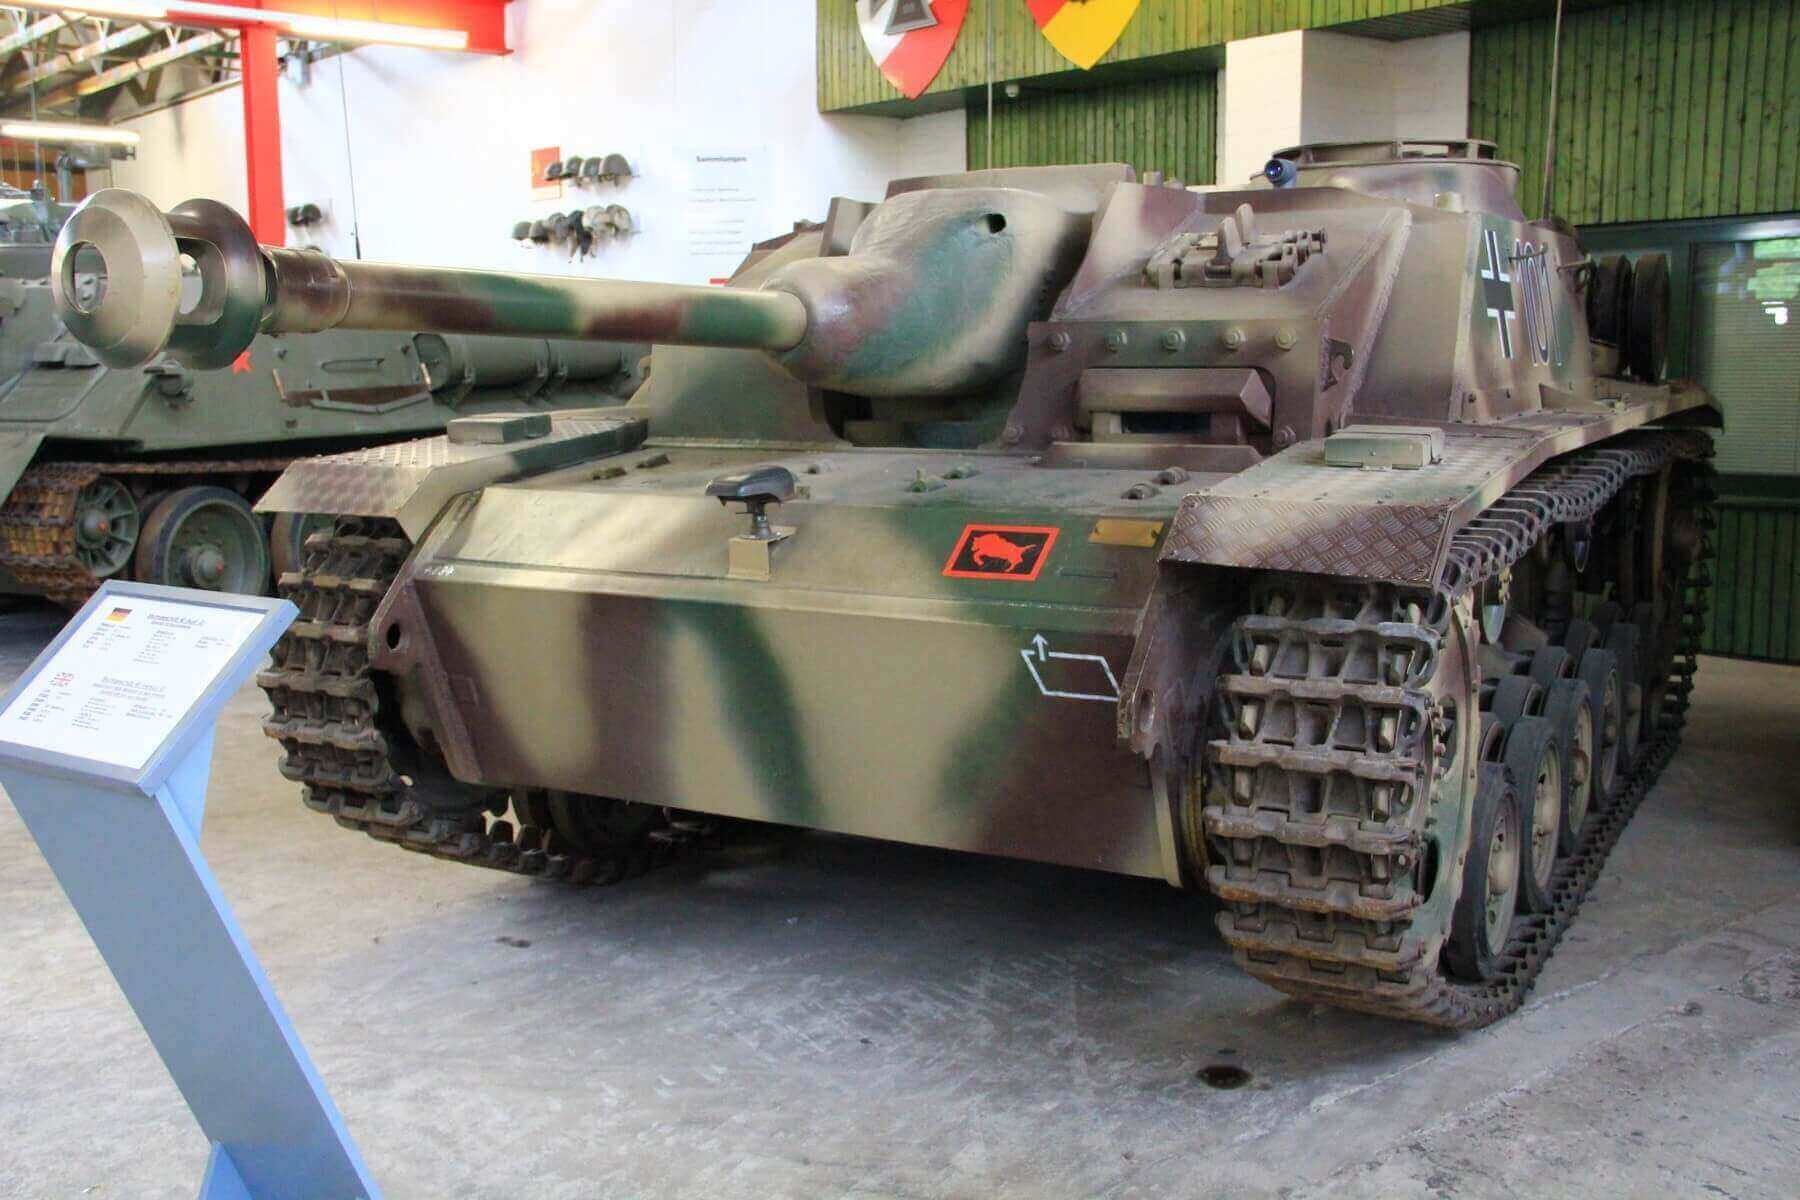  二战时期和目前在博物馆中展示的三号突击炮,可以看到炮盾外型不同